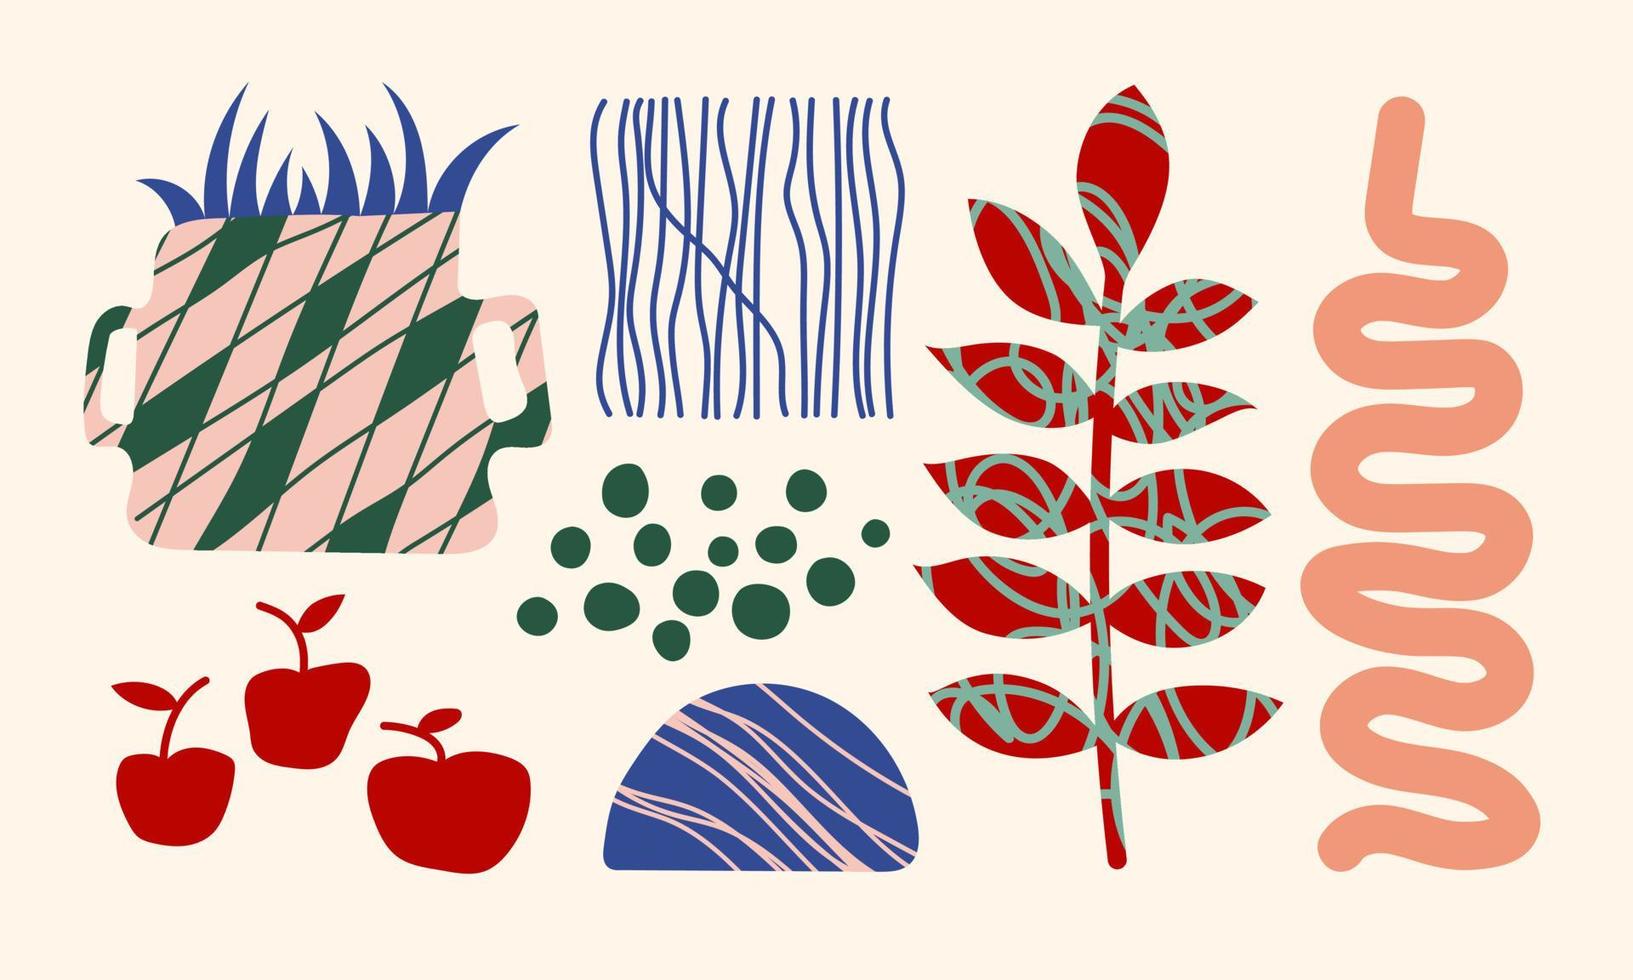 Aufkleber Satz. Vasen, Texturen, Pflanzen, Blumen, Früchte. Zeichnung Stil. bunt Abbildungen zum Abdeckungen, Bilder. Innere malen. Hand gezeichnet Mode Vektor Illustration.